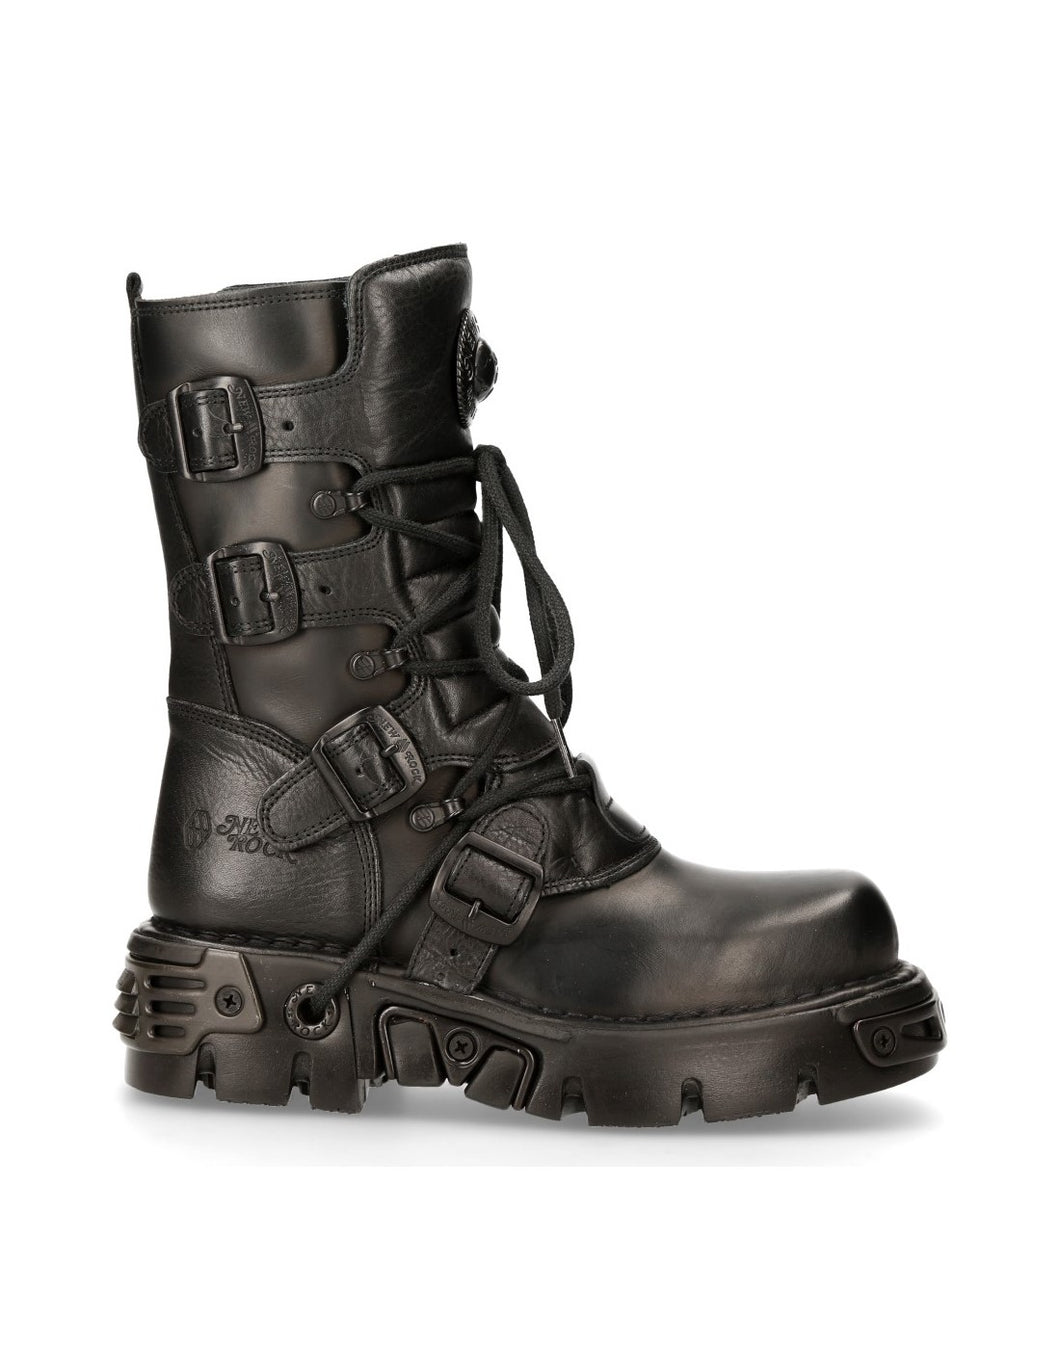 New Rock Schuhe Boots M.373-S18 Stiefel Bikerstiefel Gothic NEU Unisex